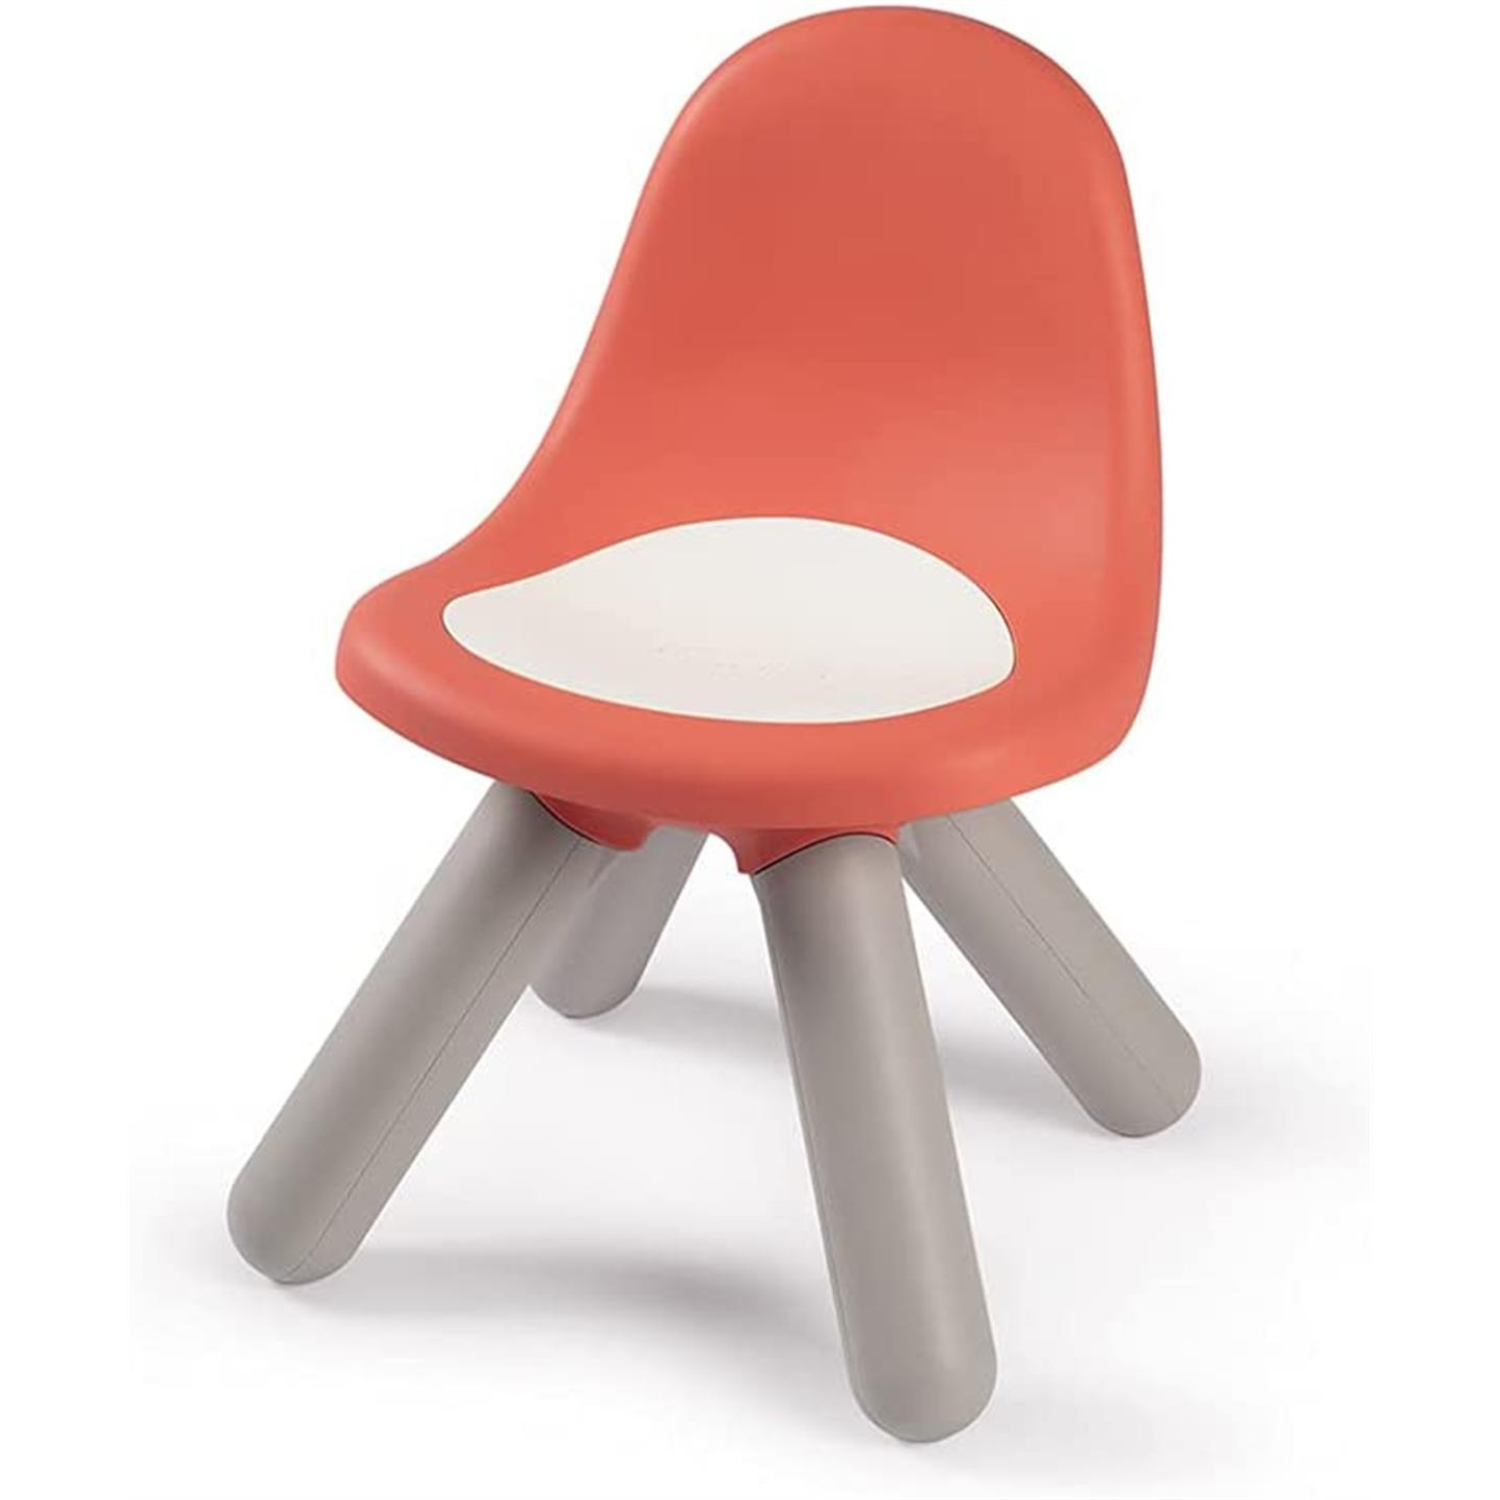 Smoby Çocuk Sandalyesi - Pastel Kırmızı 880107 | Toysall